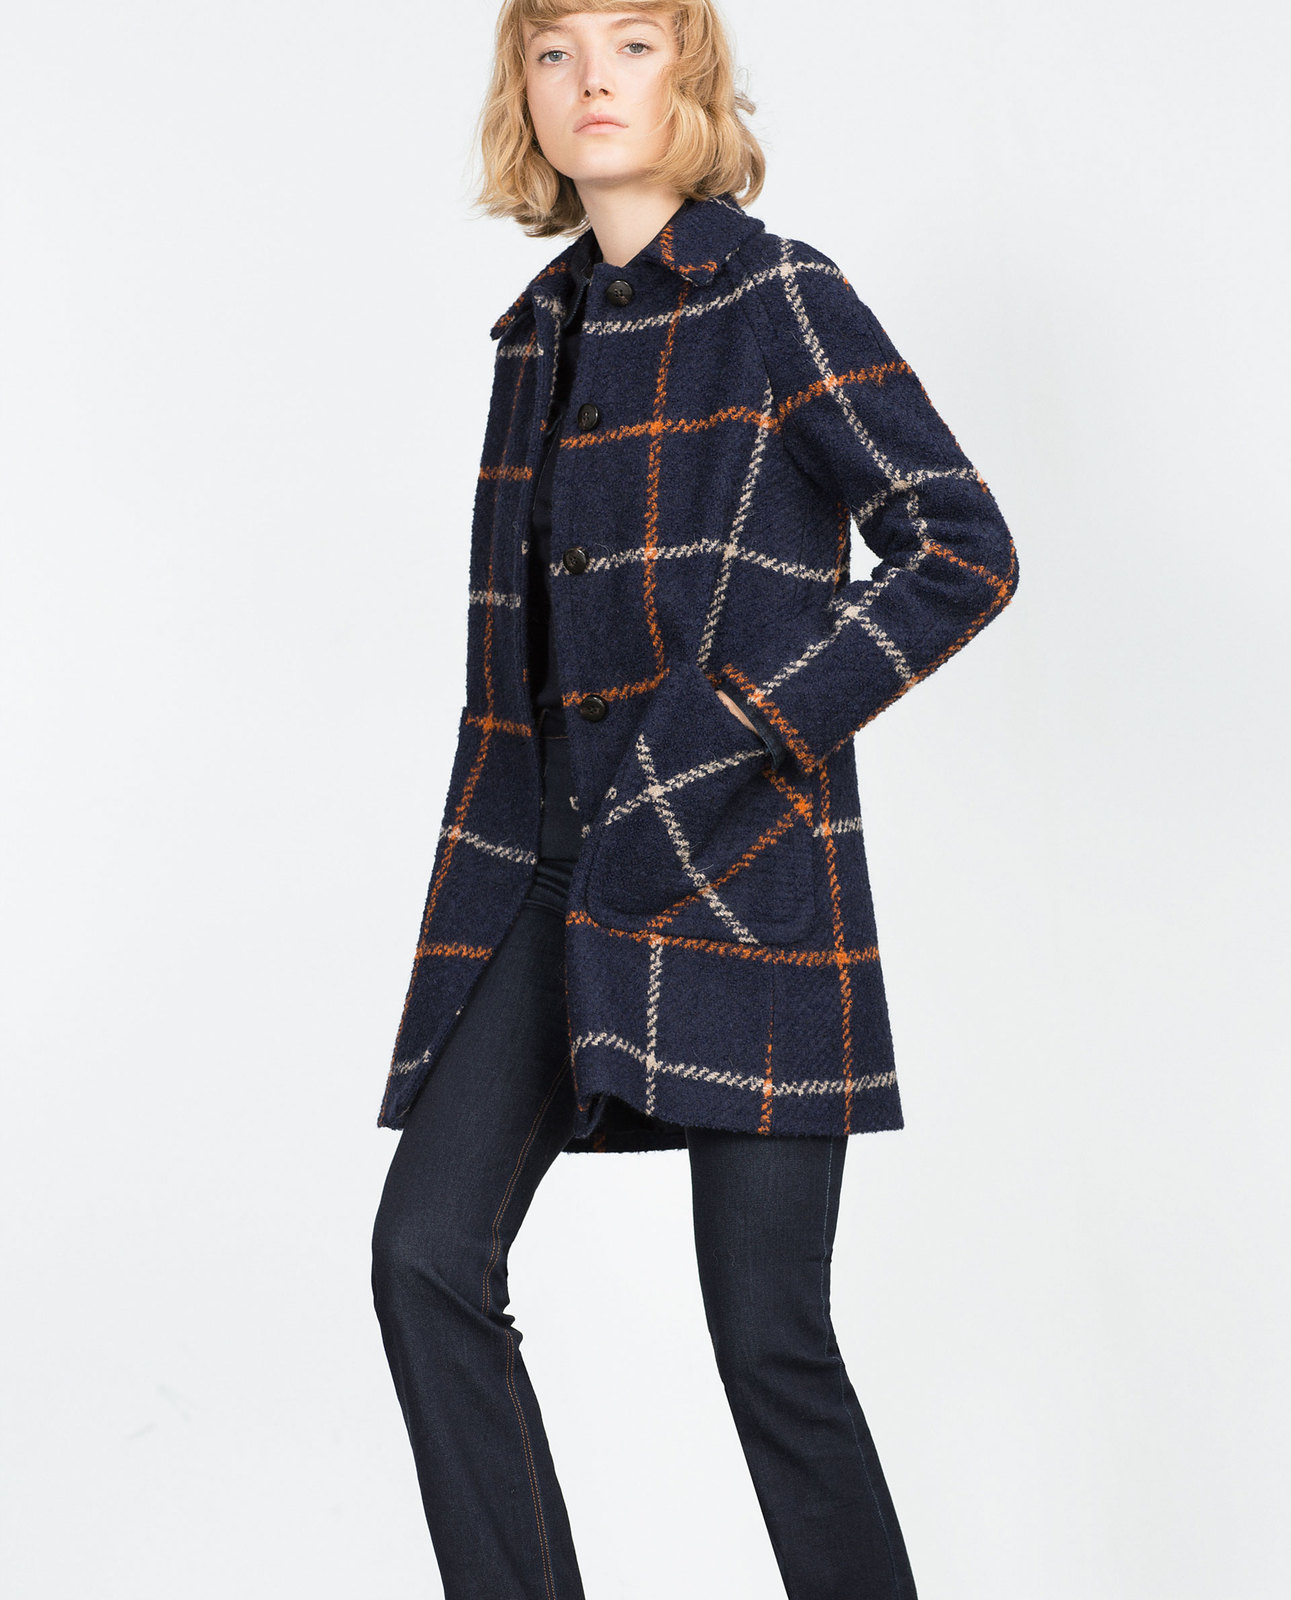 Zara női gyapjú buklé kabát 2015.10.15 fotója